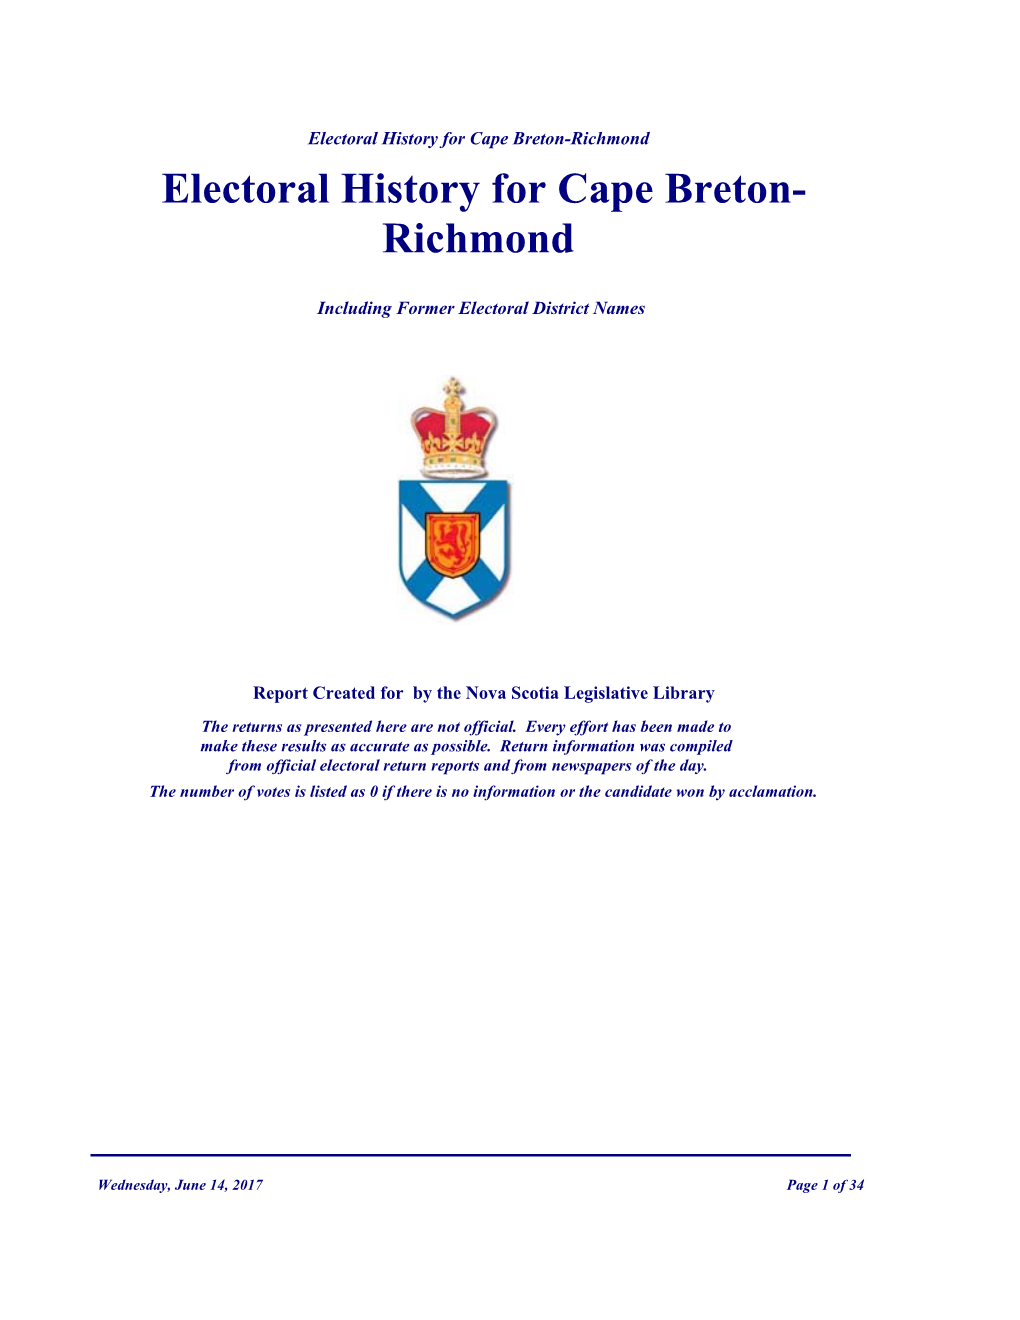 Electoral History for Cape Breton- Richmond